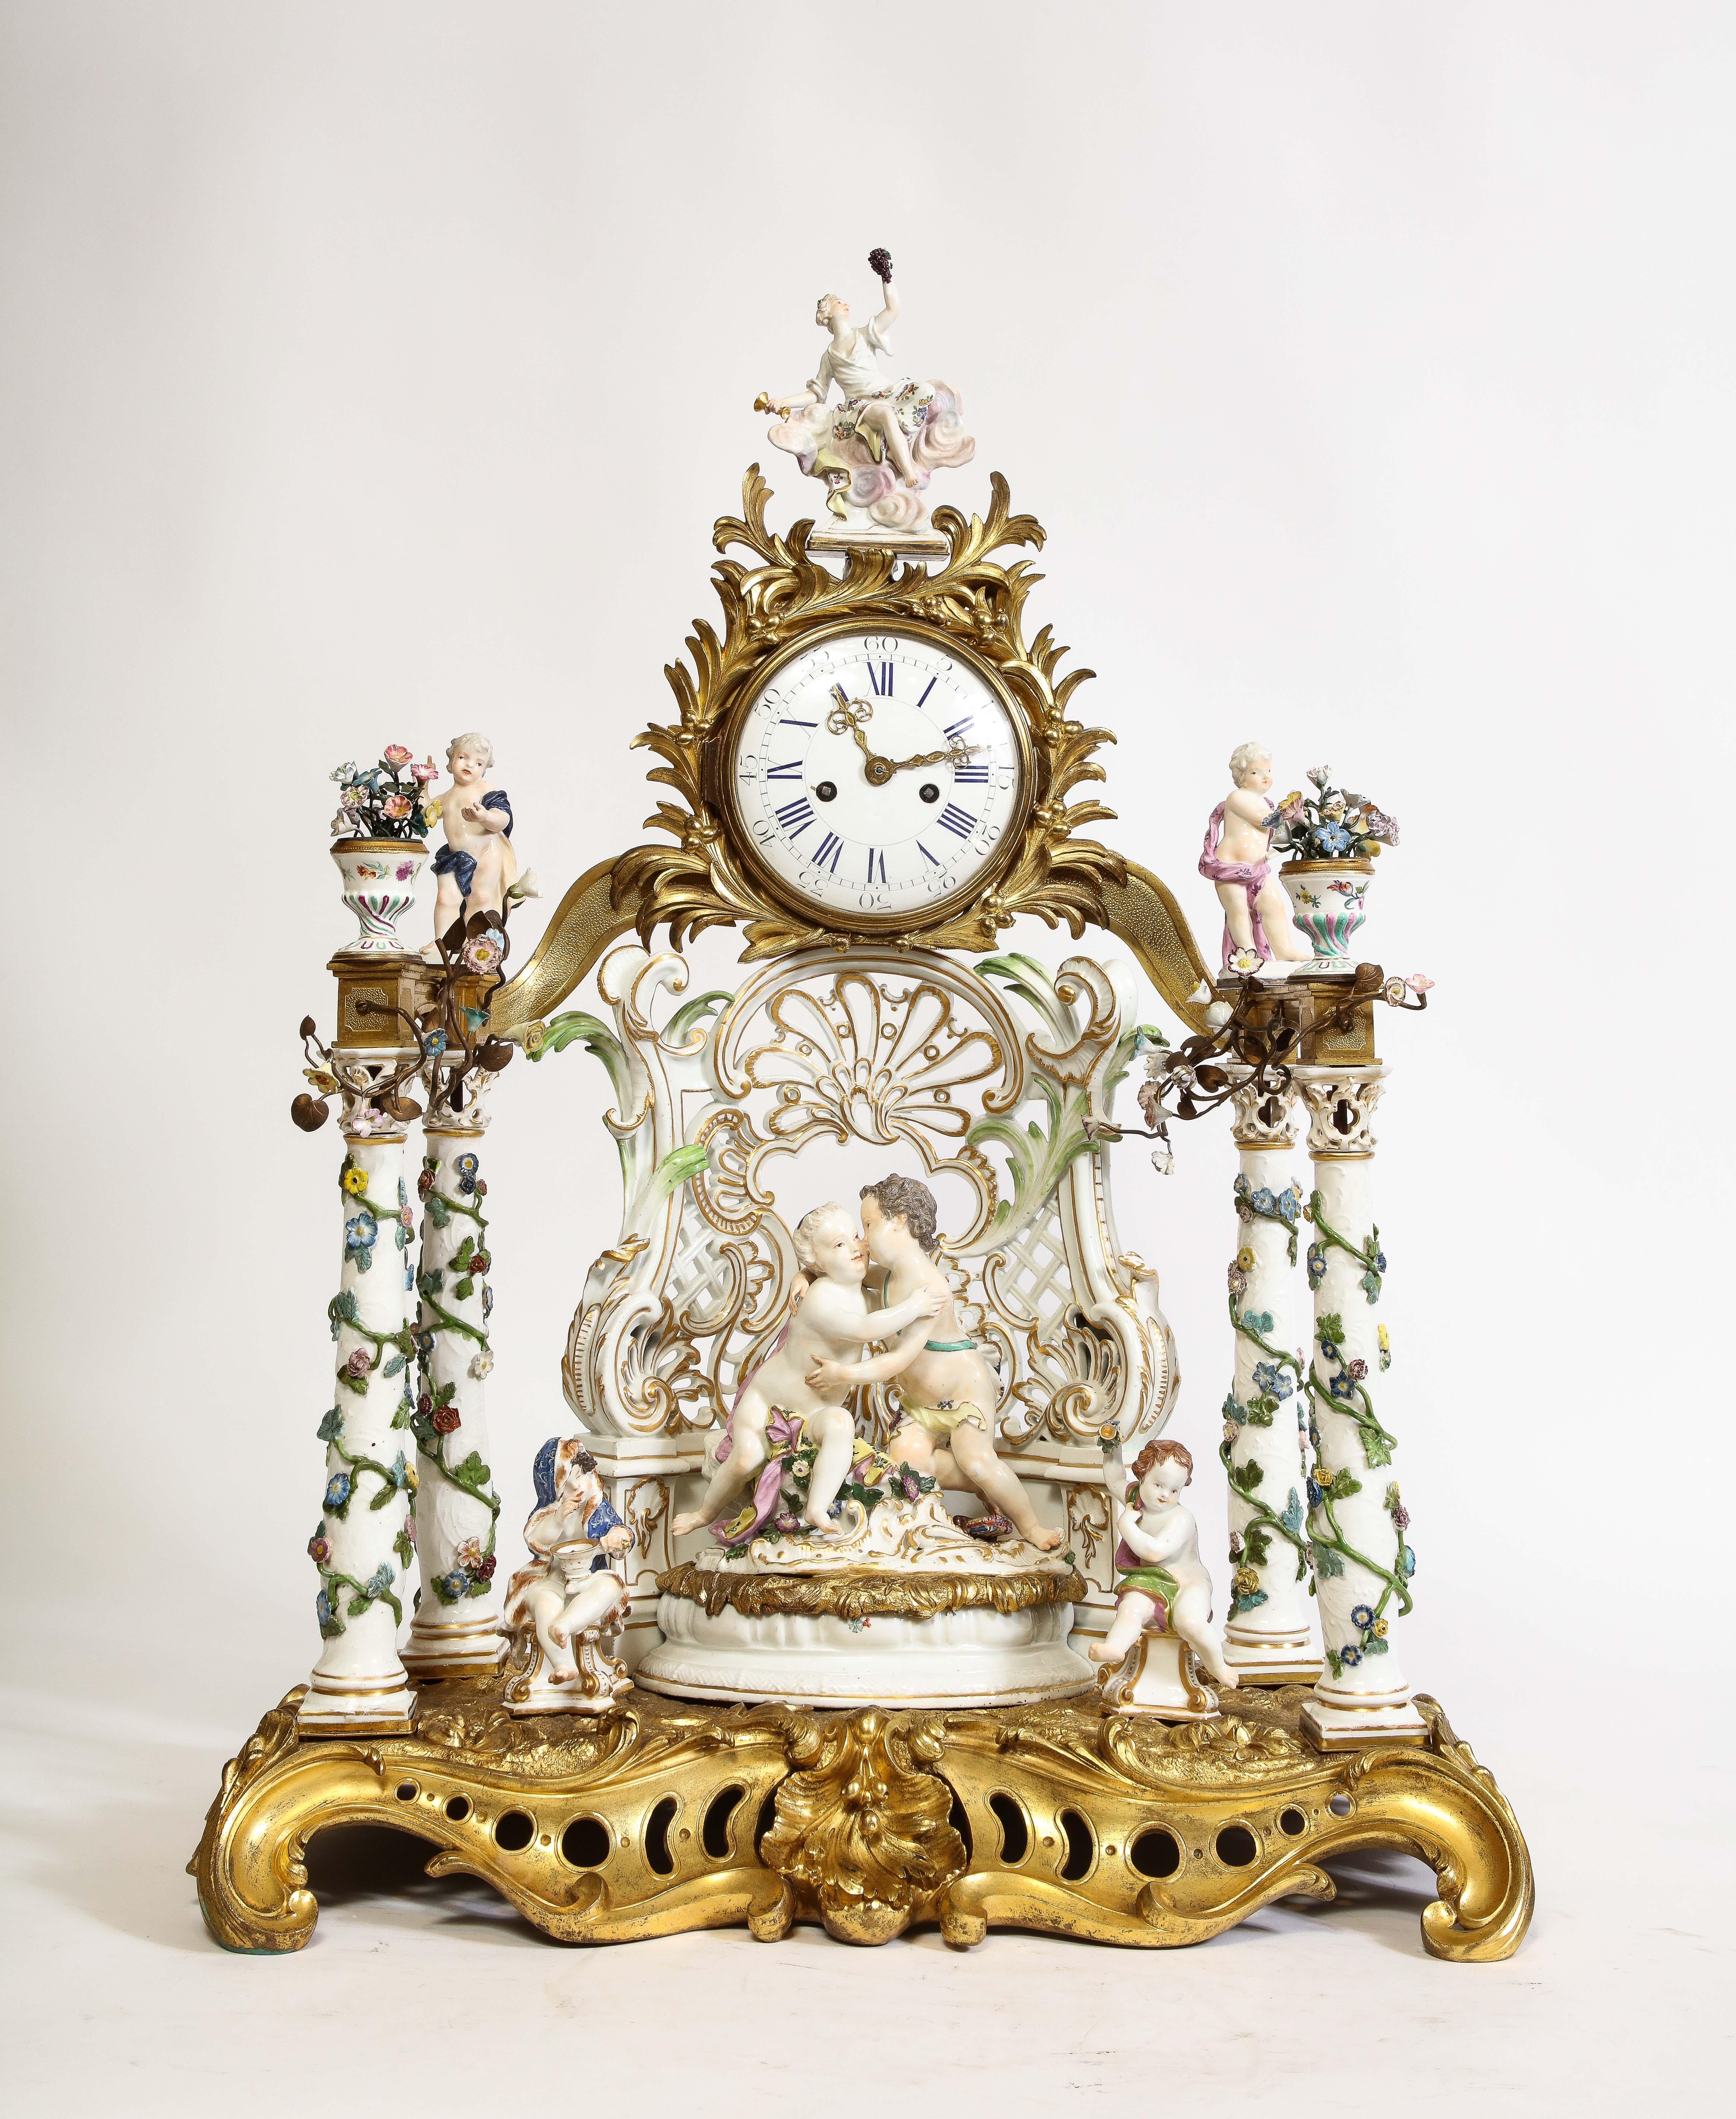 Très grand et rare ensemble de trois pièces en porcelaine de Meissen, monté en bronze doré, comprenant une horloge et un chandelier. Cet ensemble impressionnant se compose de trois pièces : une horloge centrale et deux candélabres, chacun orné des